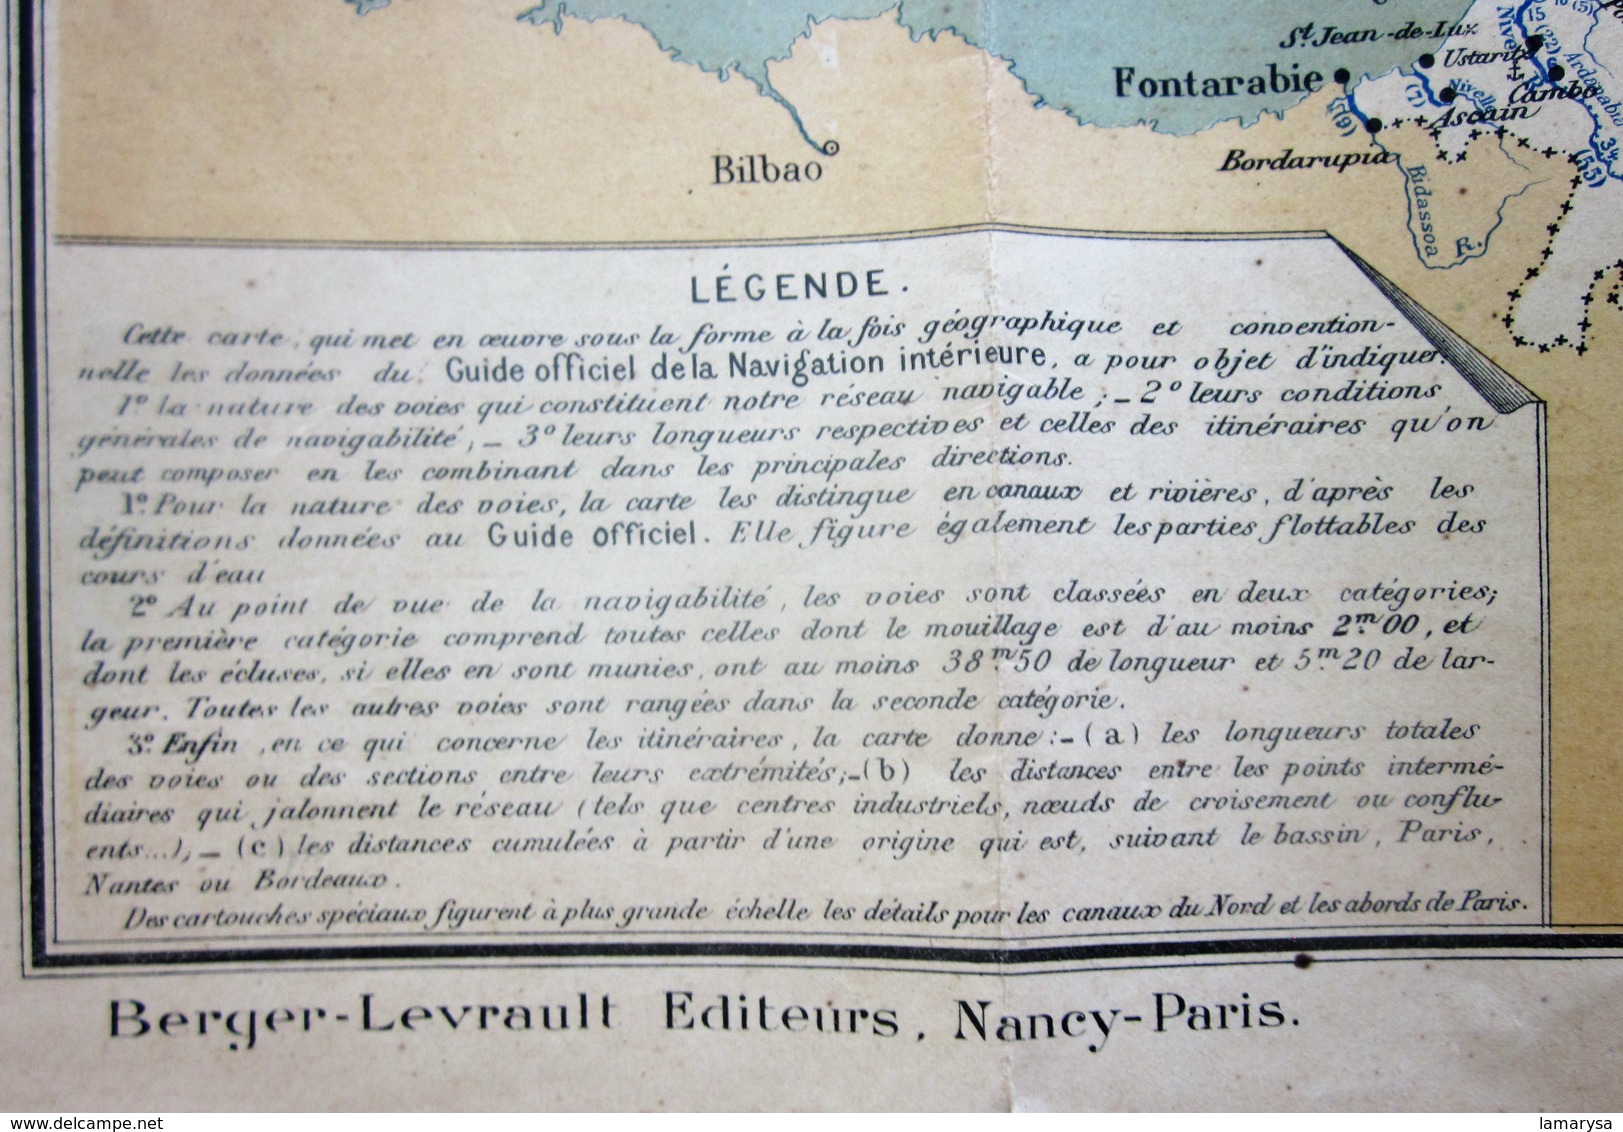 1911 CARTE ITINÉRAIRE VOIES NAVIGABLES DE FRANCE D’APRÈS GUIDE OFFICIEL NAVIGATION INTÉRIEURE éditeurs Berger Levrault